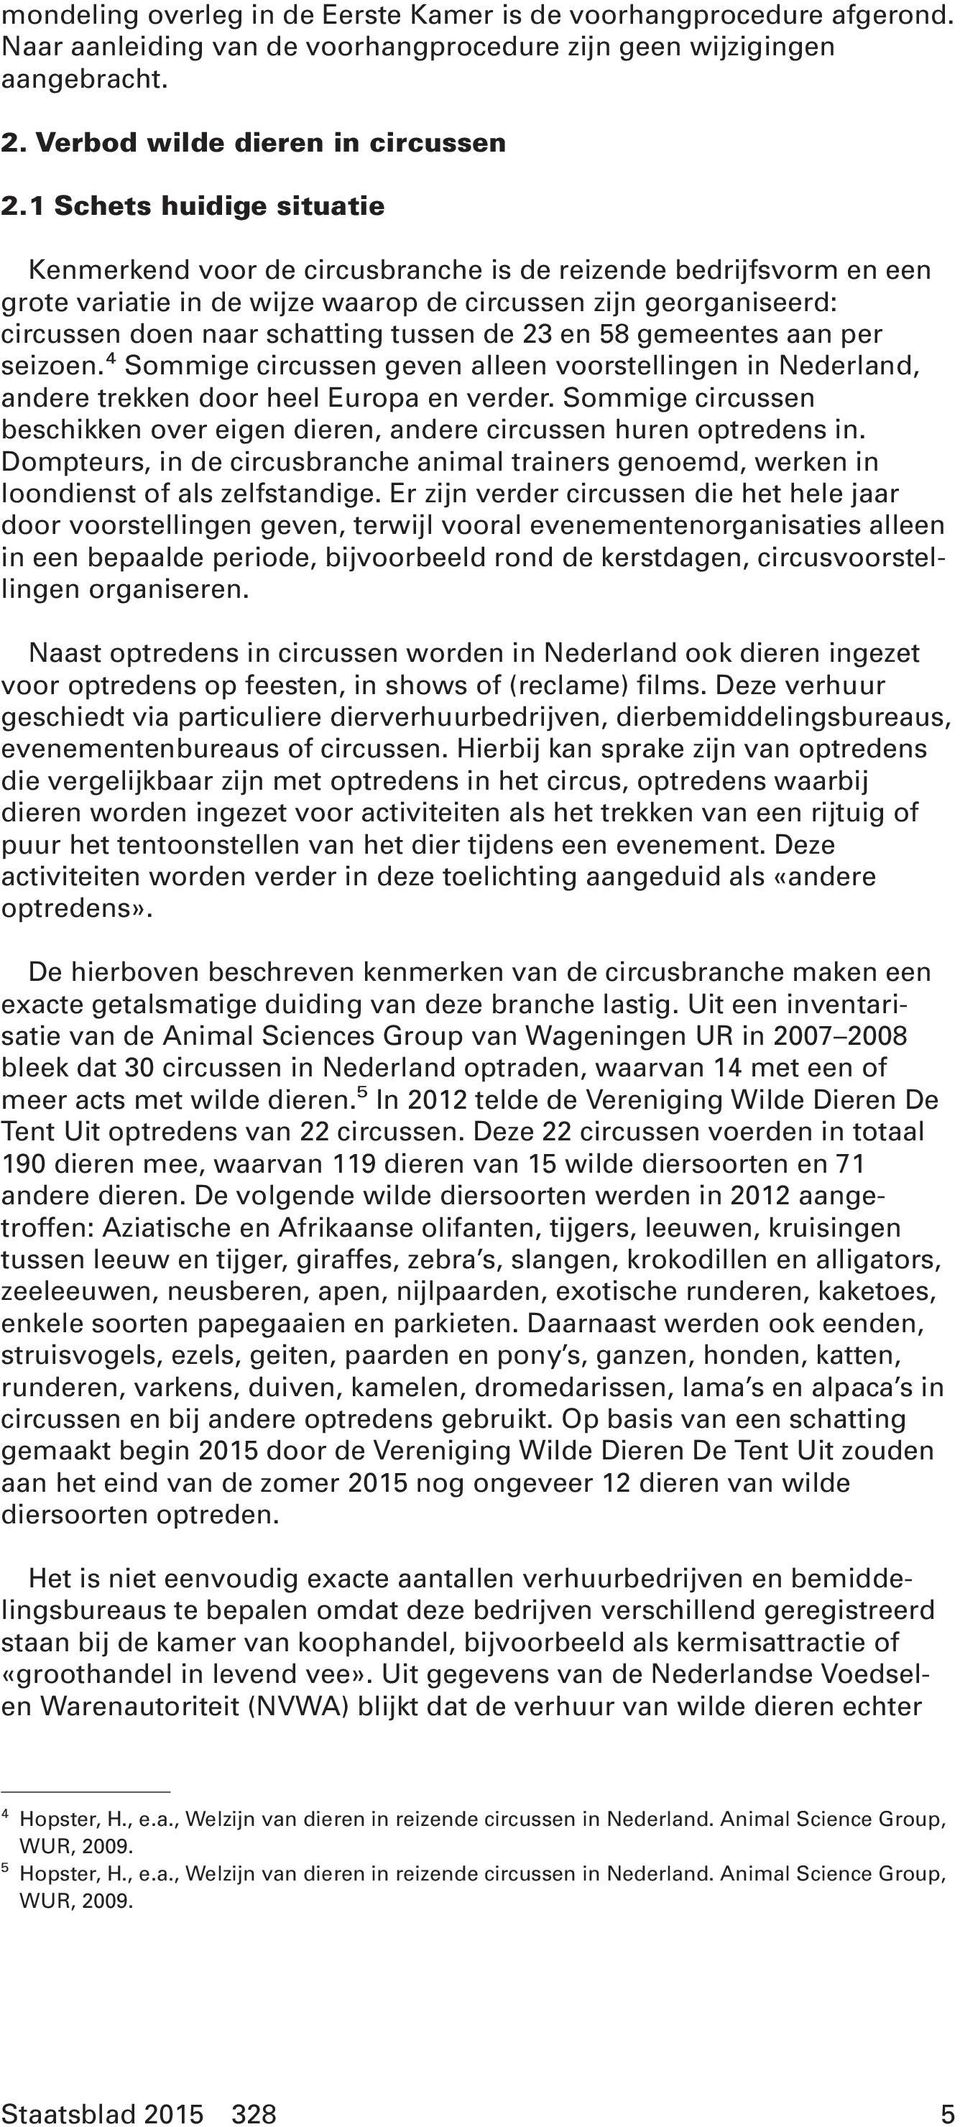 de 23 en 58 gemeentes aan per seizoen. 4 Sommige circussen geven alleen voorstellingen in Nederland, andere trekken door heel Europa en verder.